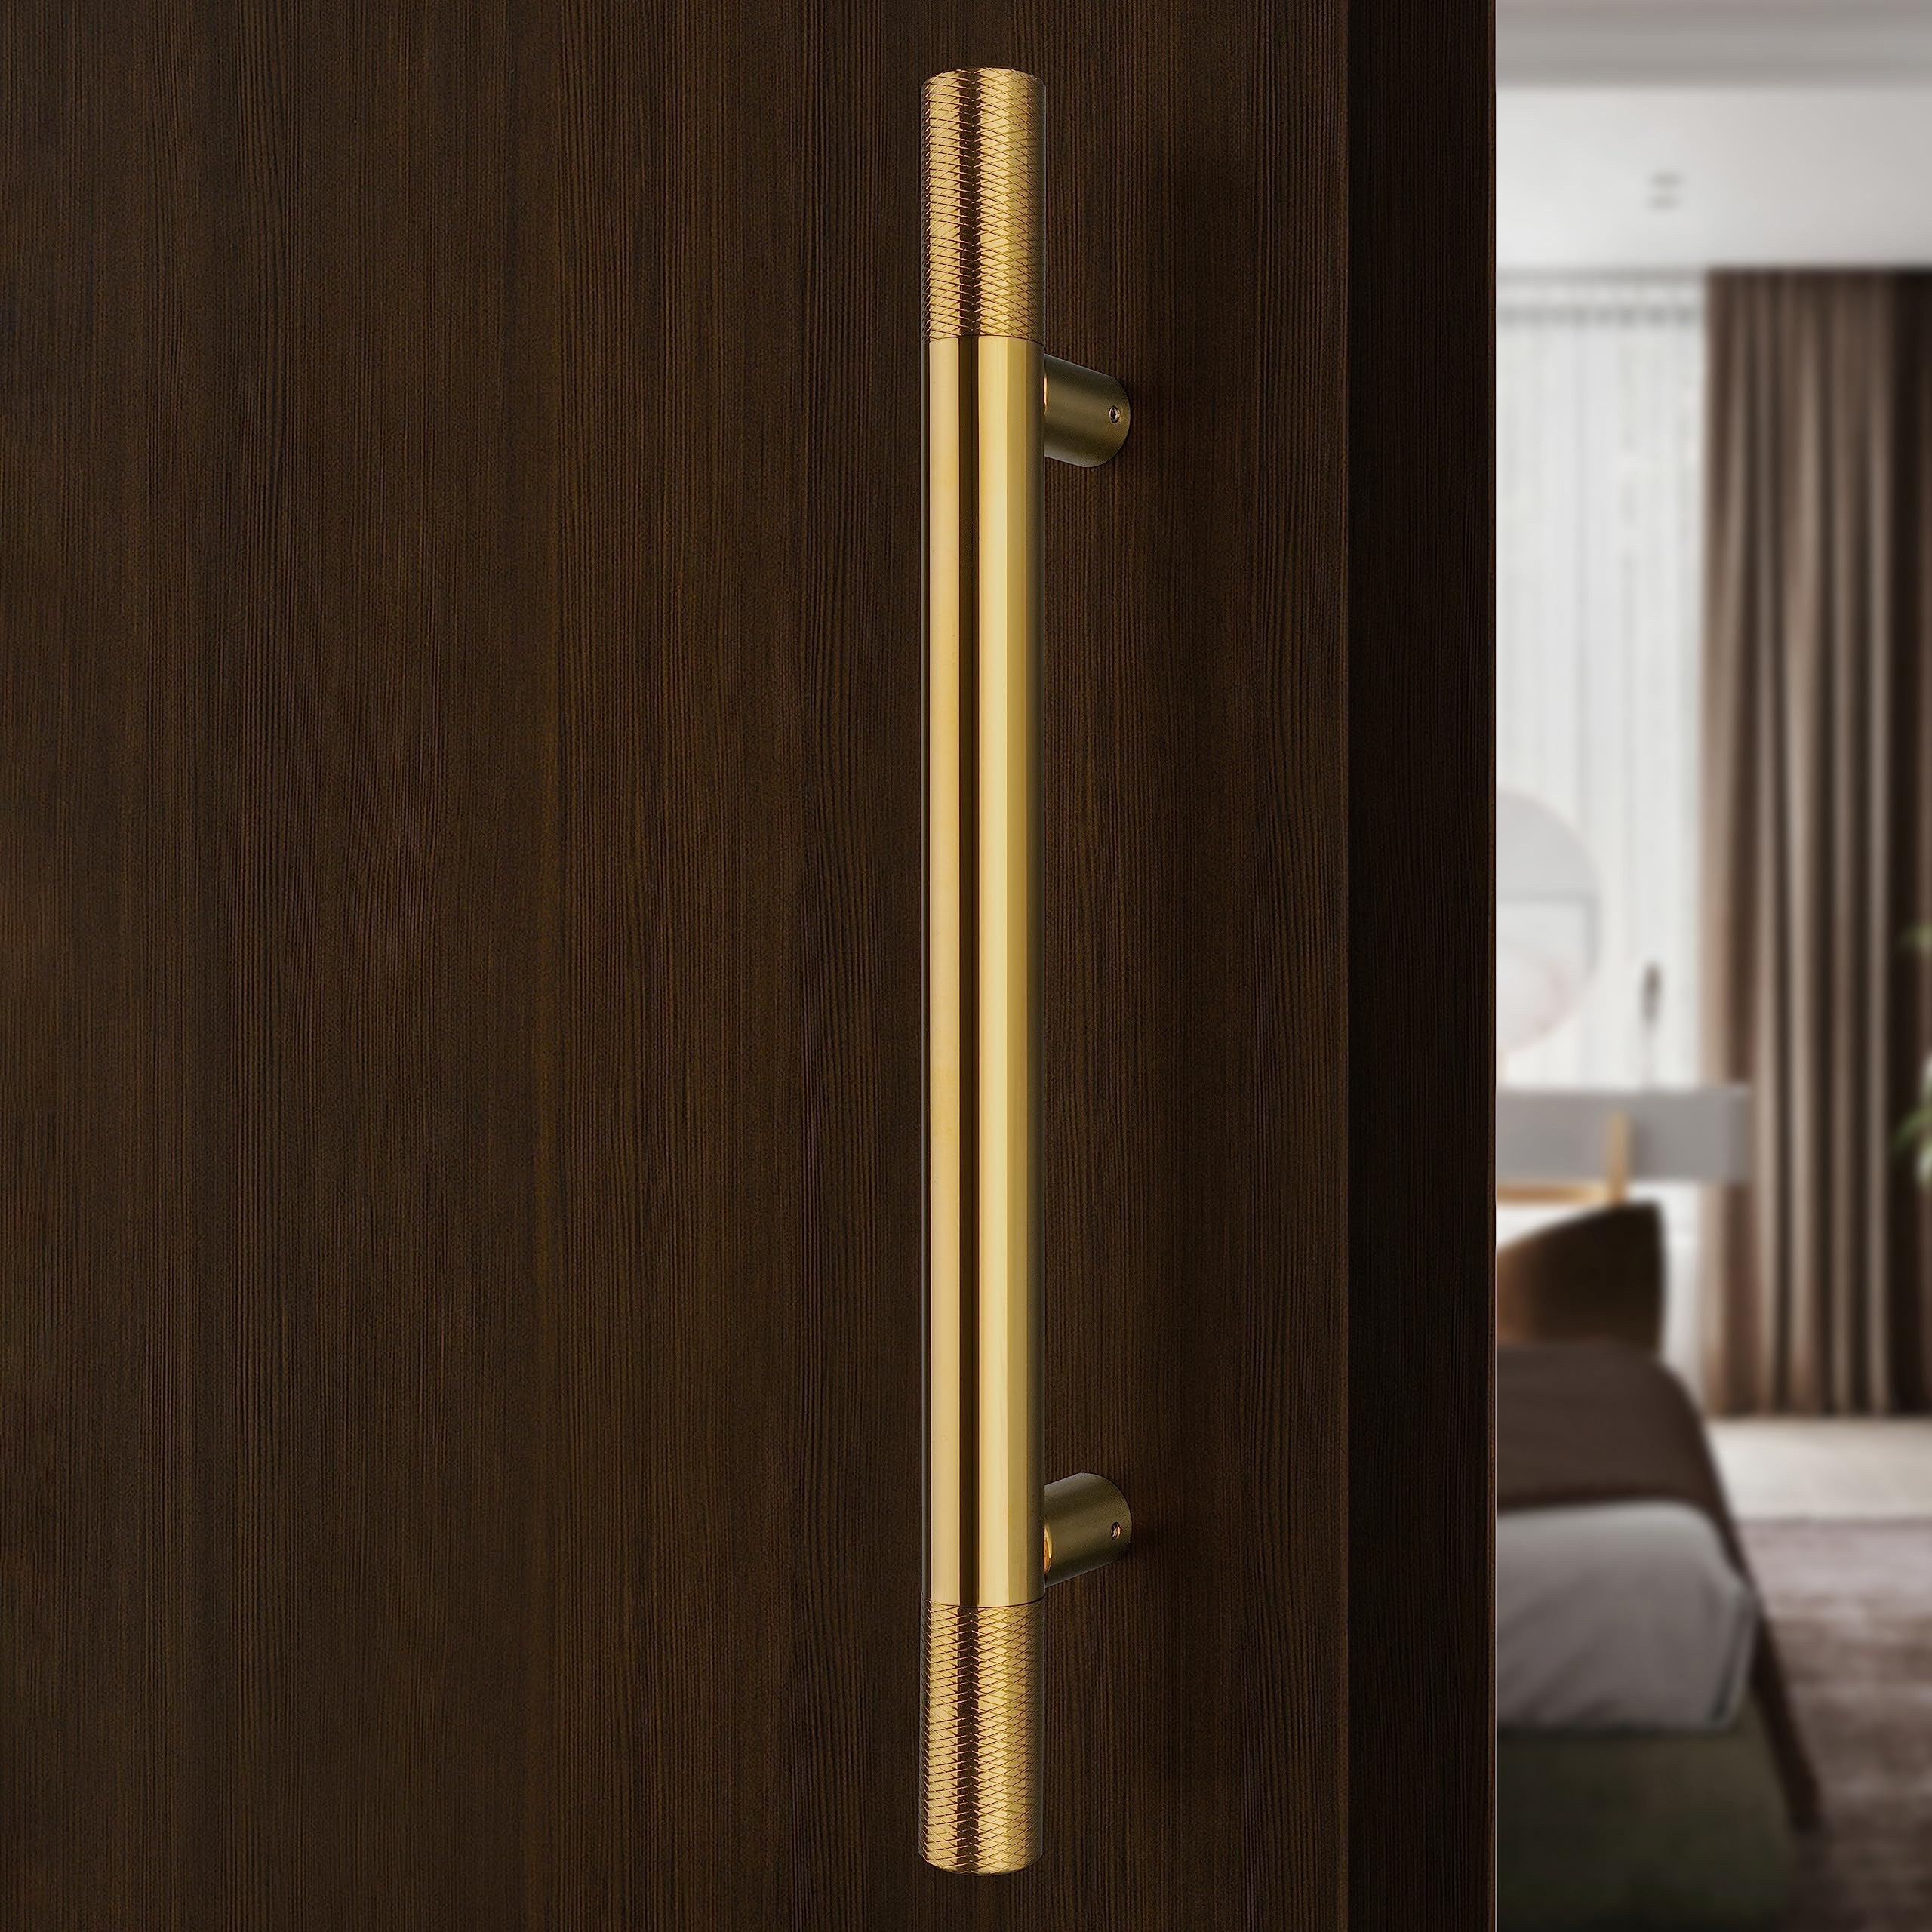 Plantex Heavy Duty Door Handle/Door & Home Decor/18 Inch Main Door Handle/Pull-Push Door Handle - (PVD Gold)